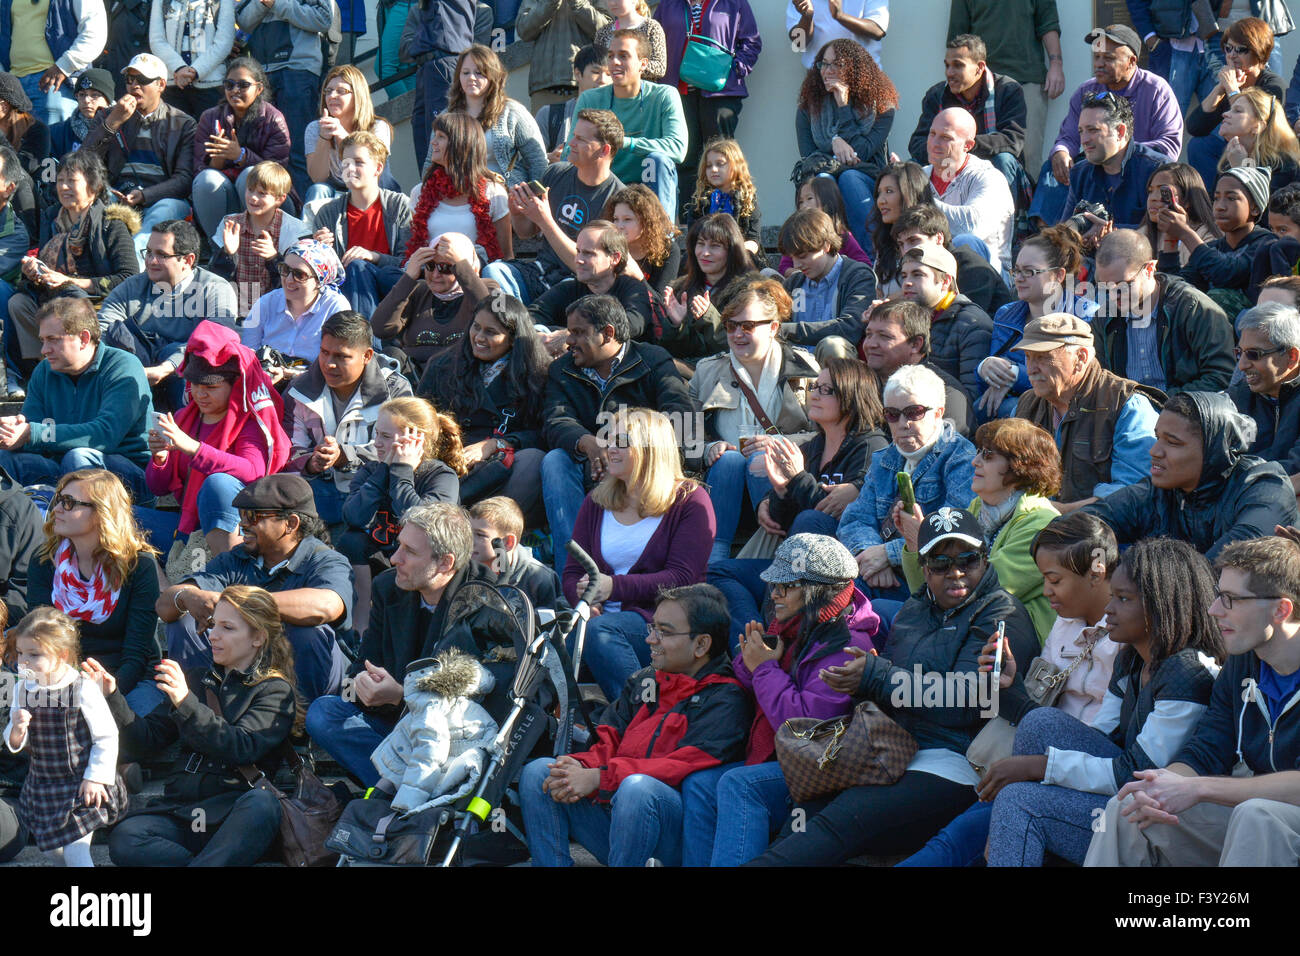 Multitude de personnes aux Etats-Unis assis sur des gradins pour réagir et regarder un événement Banque D'Images